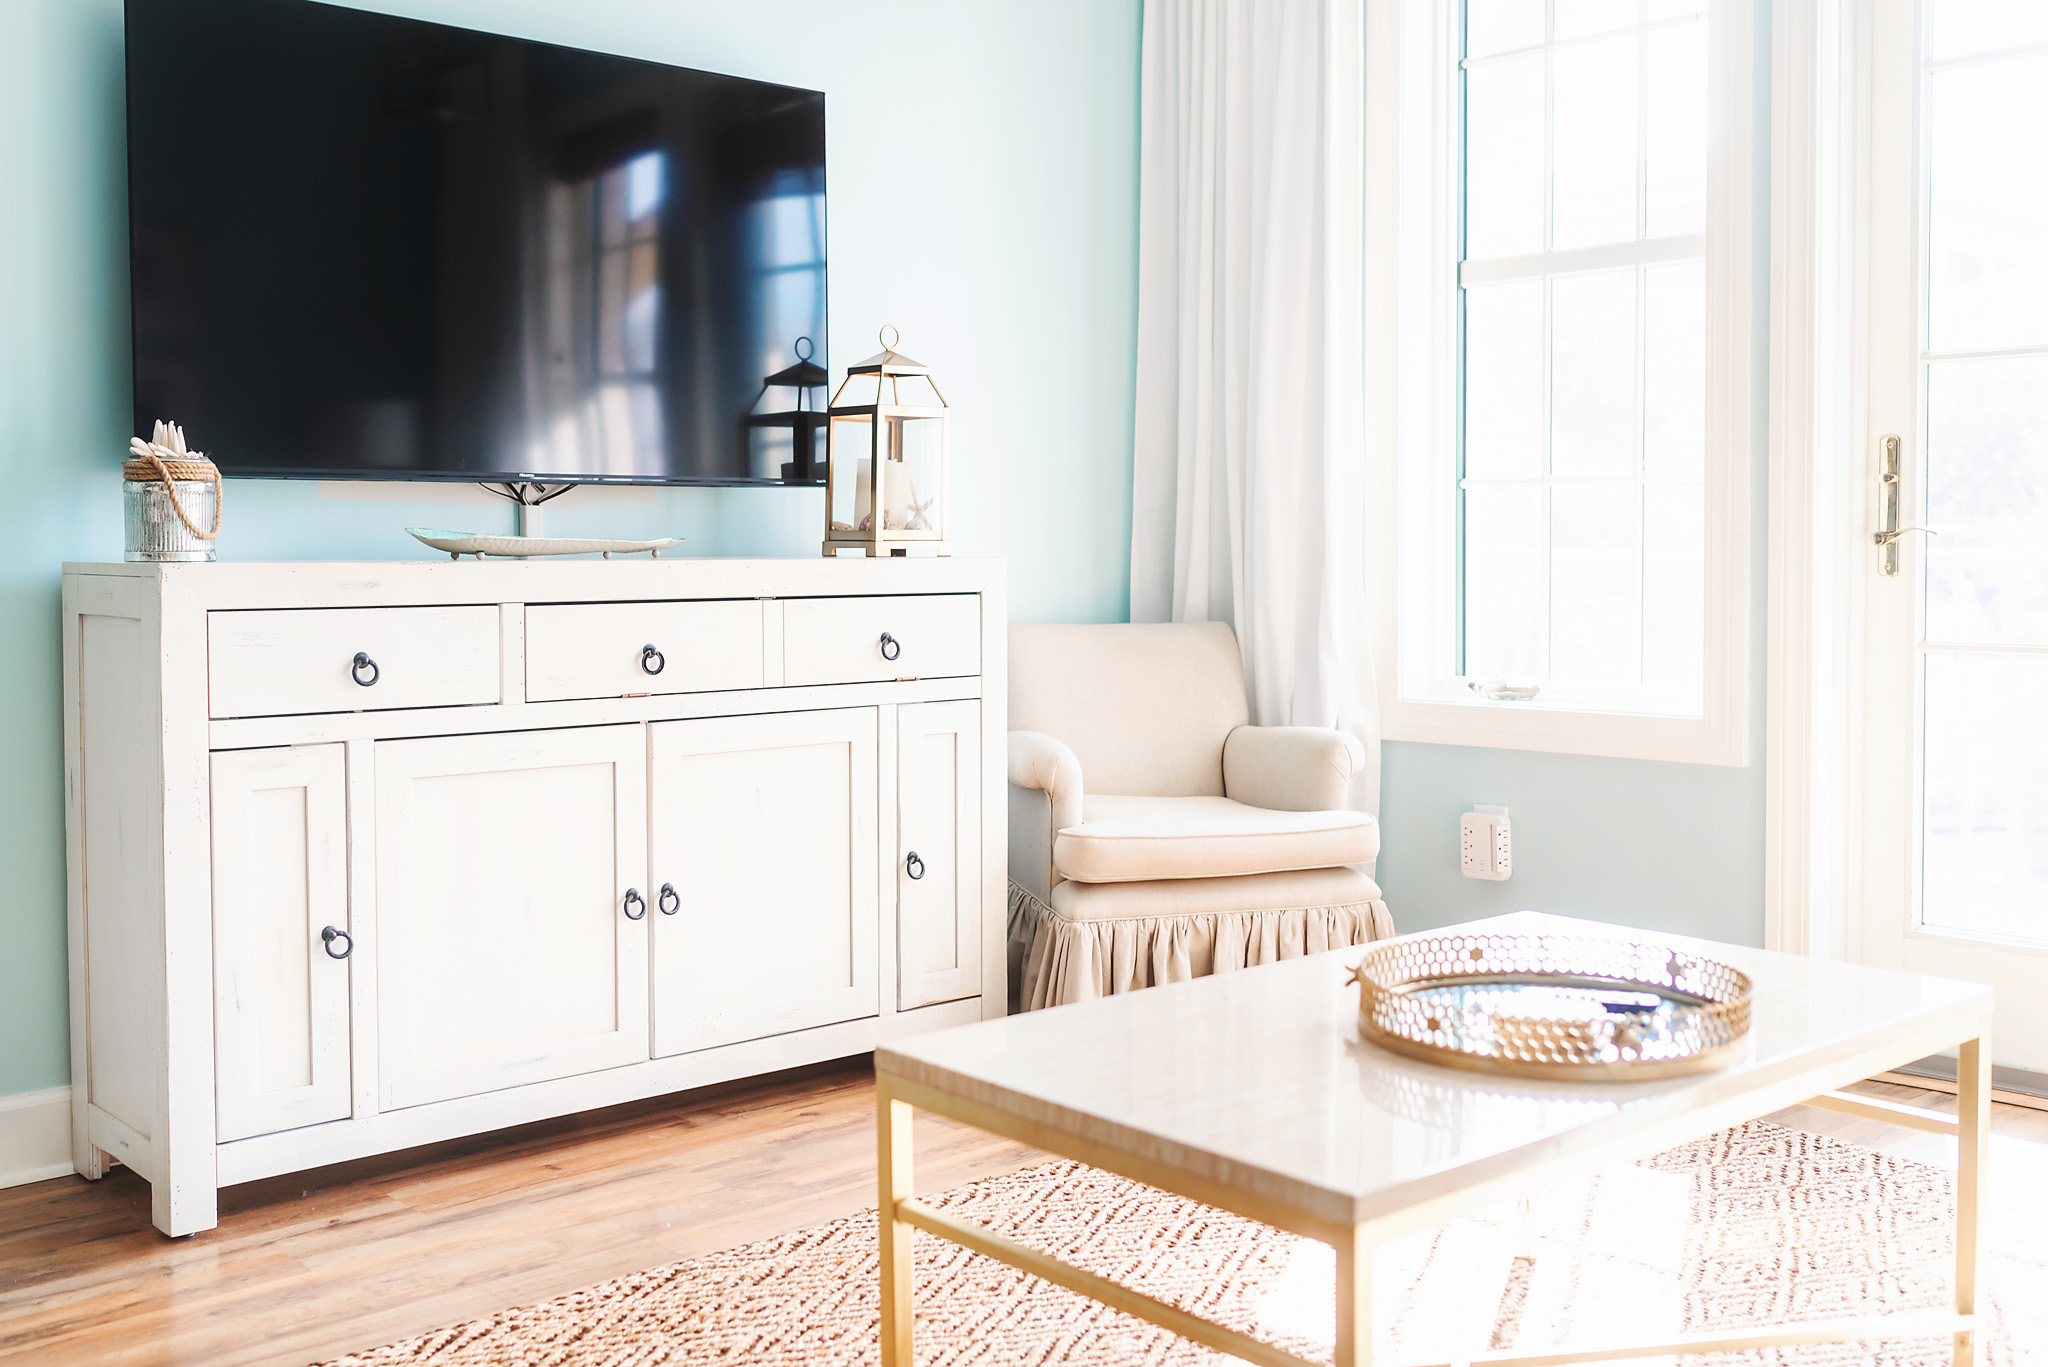 Choosing the Best TV for Airbnb Rental Properties